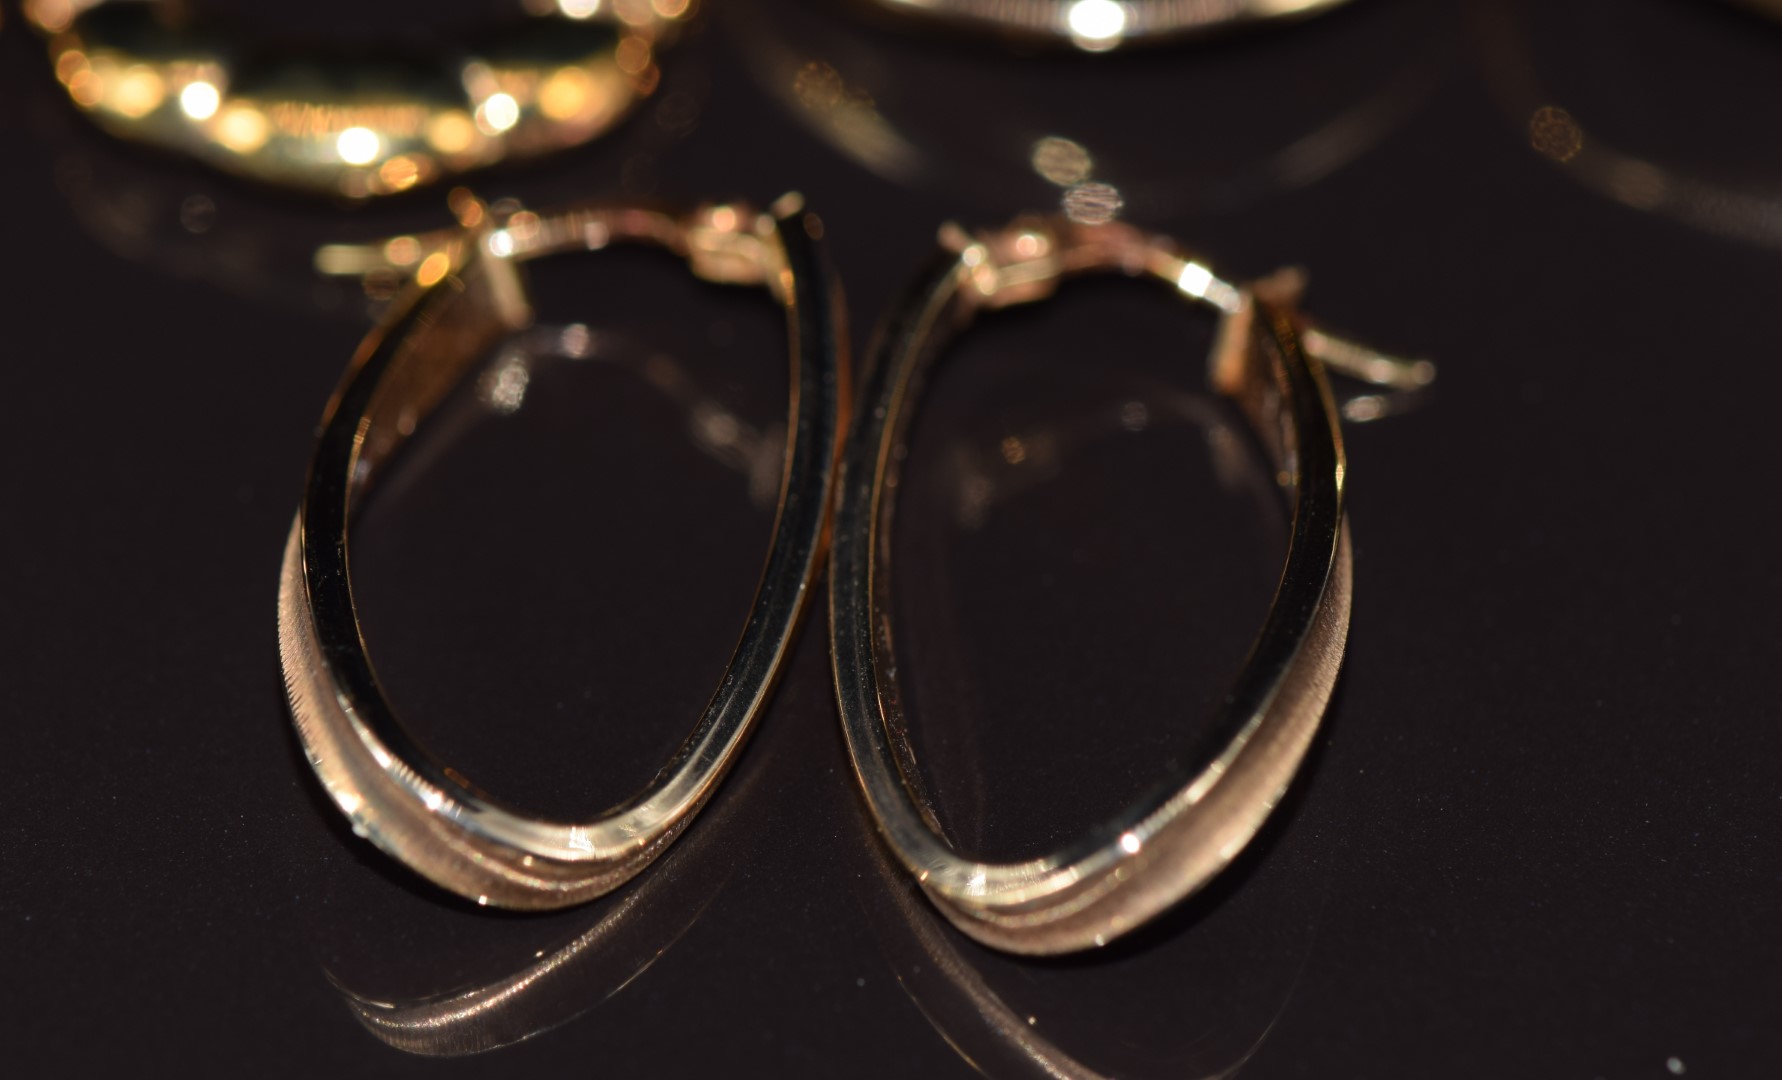 Three pairs of 9ct gold hoop earrings, 4.7g - Image 3 of 3